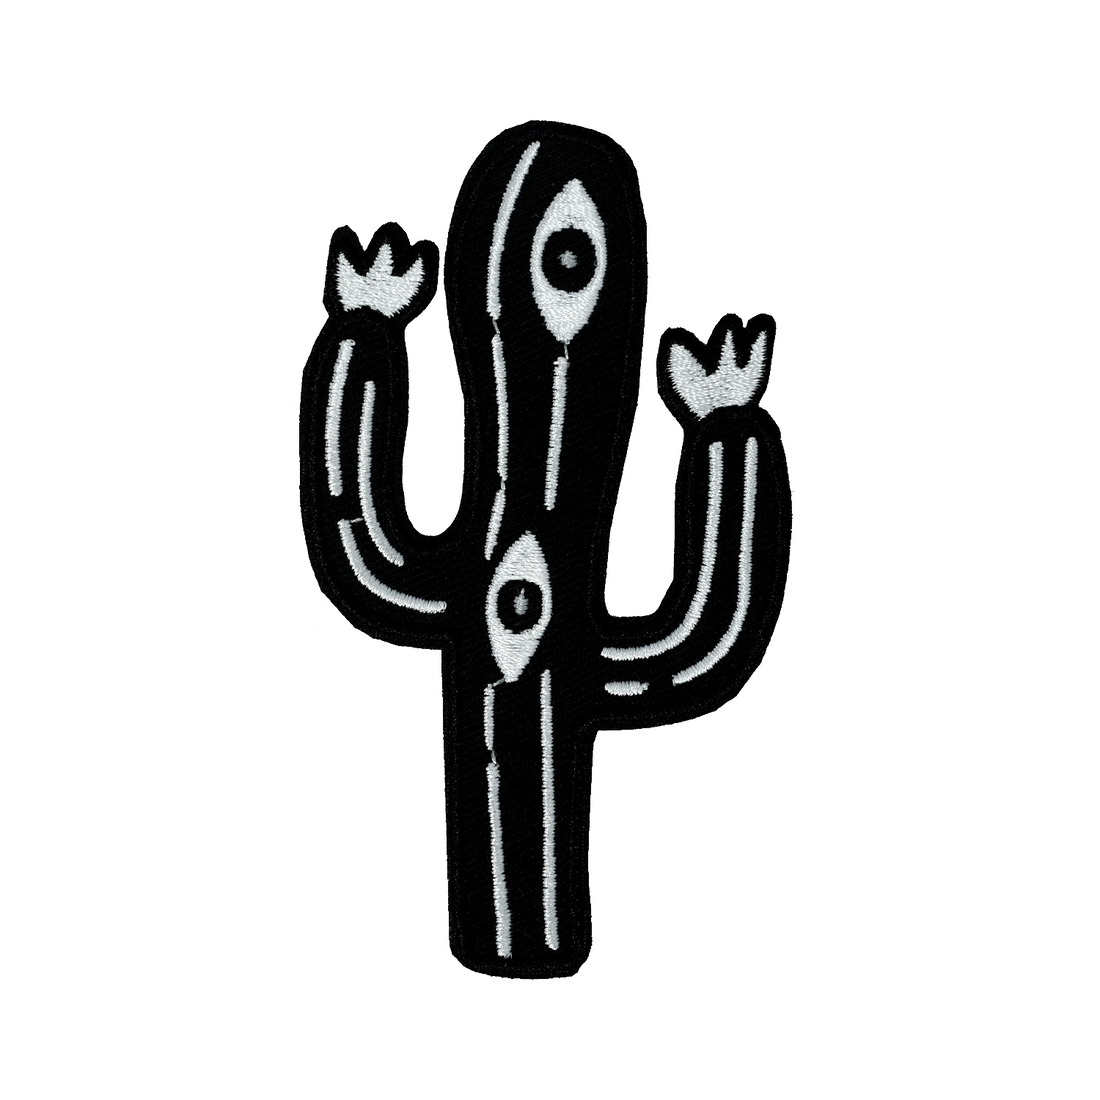 Patch: Cactus